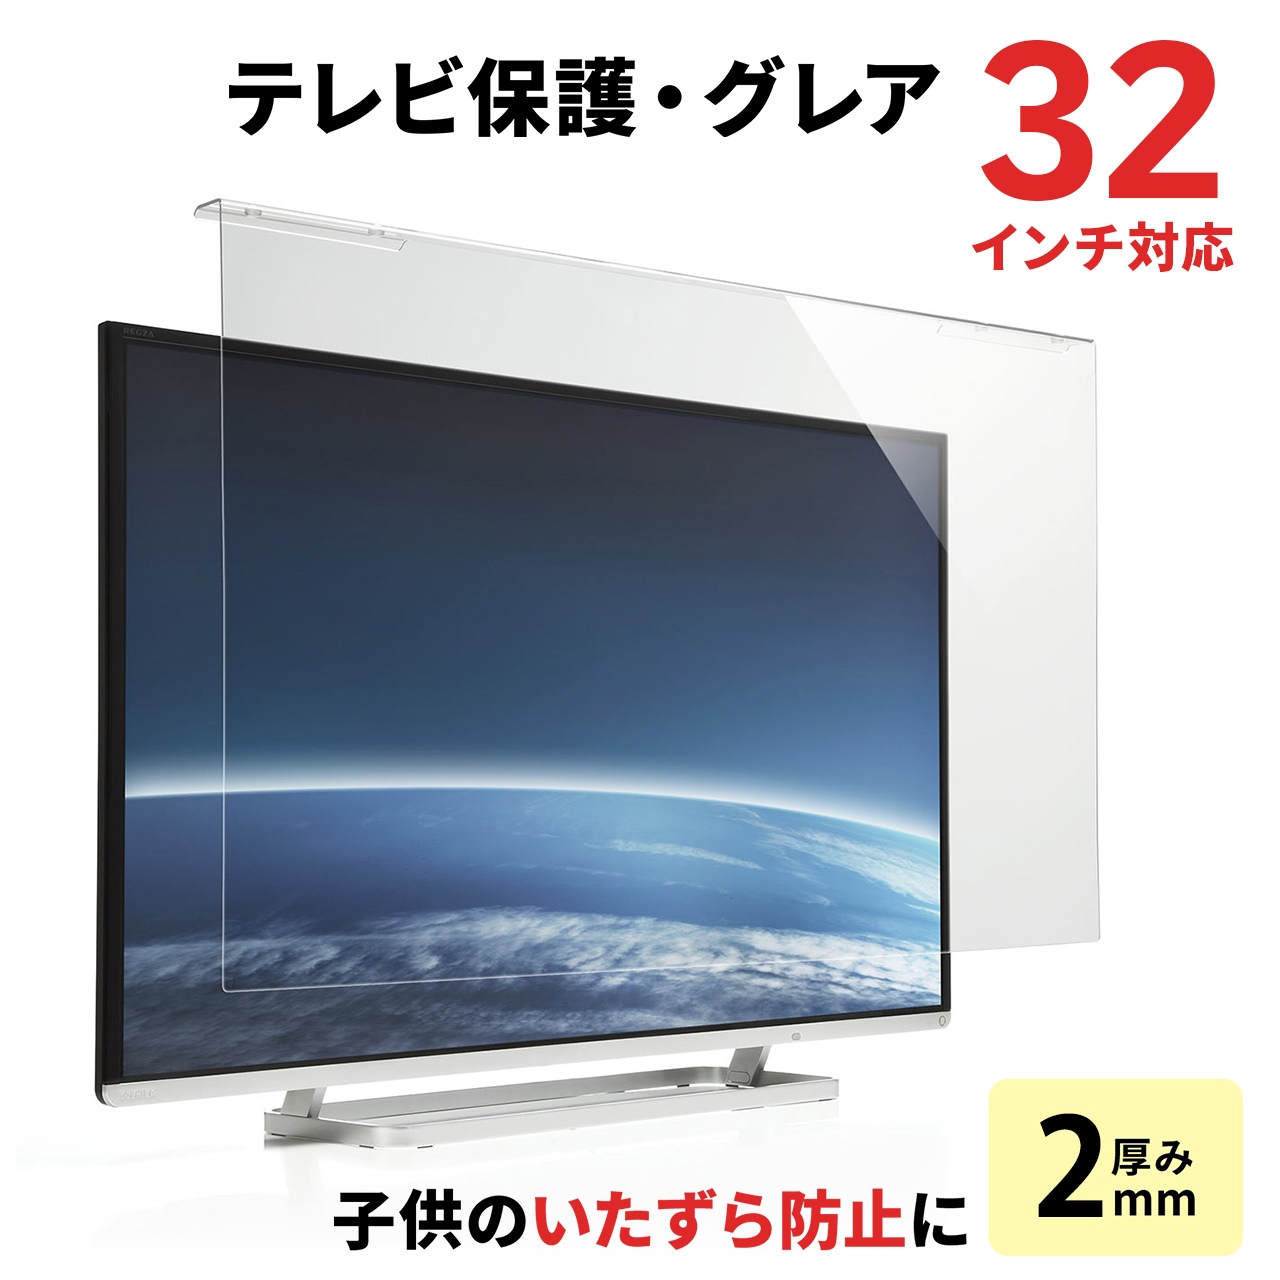 【スペシャルバリューセール】液晶テレビ保護パネル(32インチ対応・アクリル製) 200-CRT012